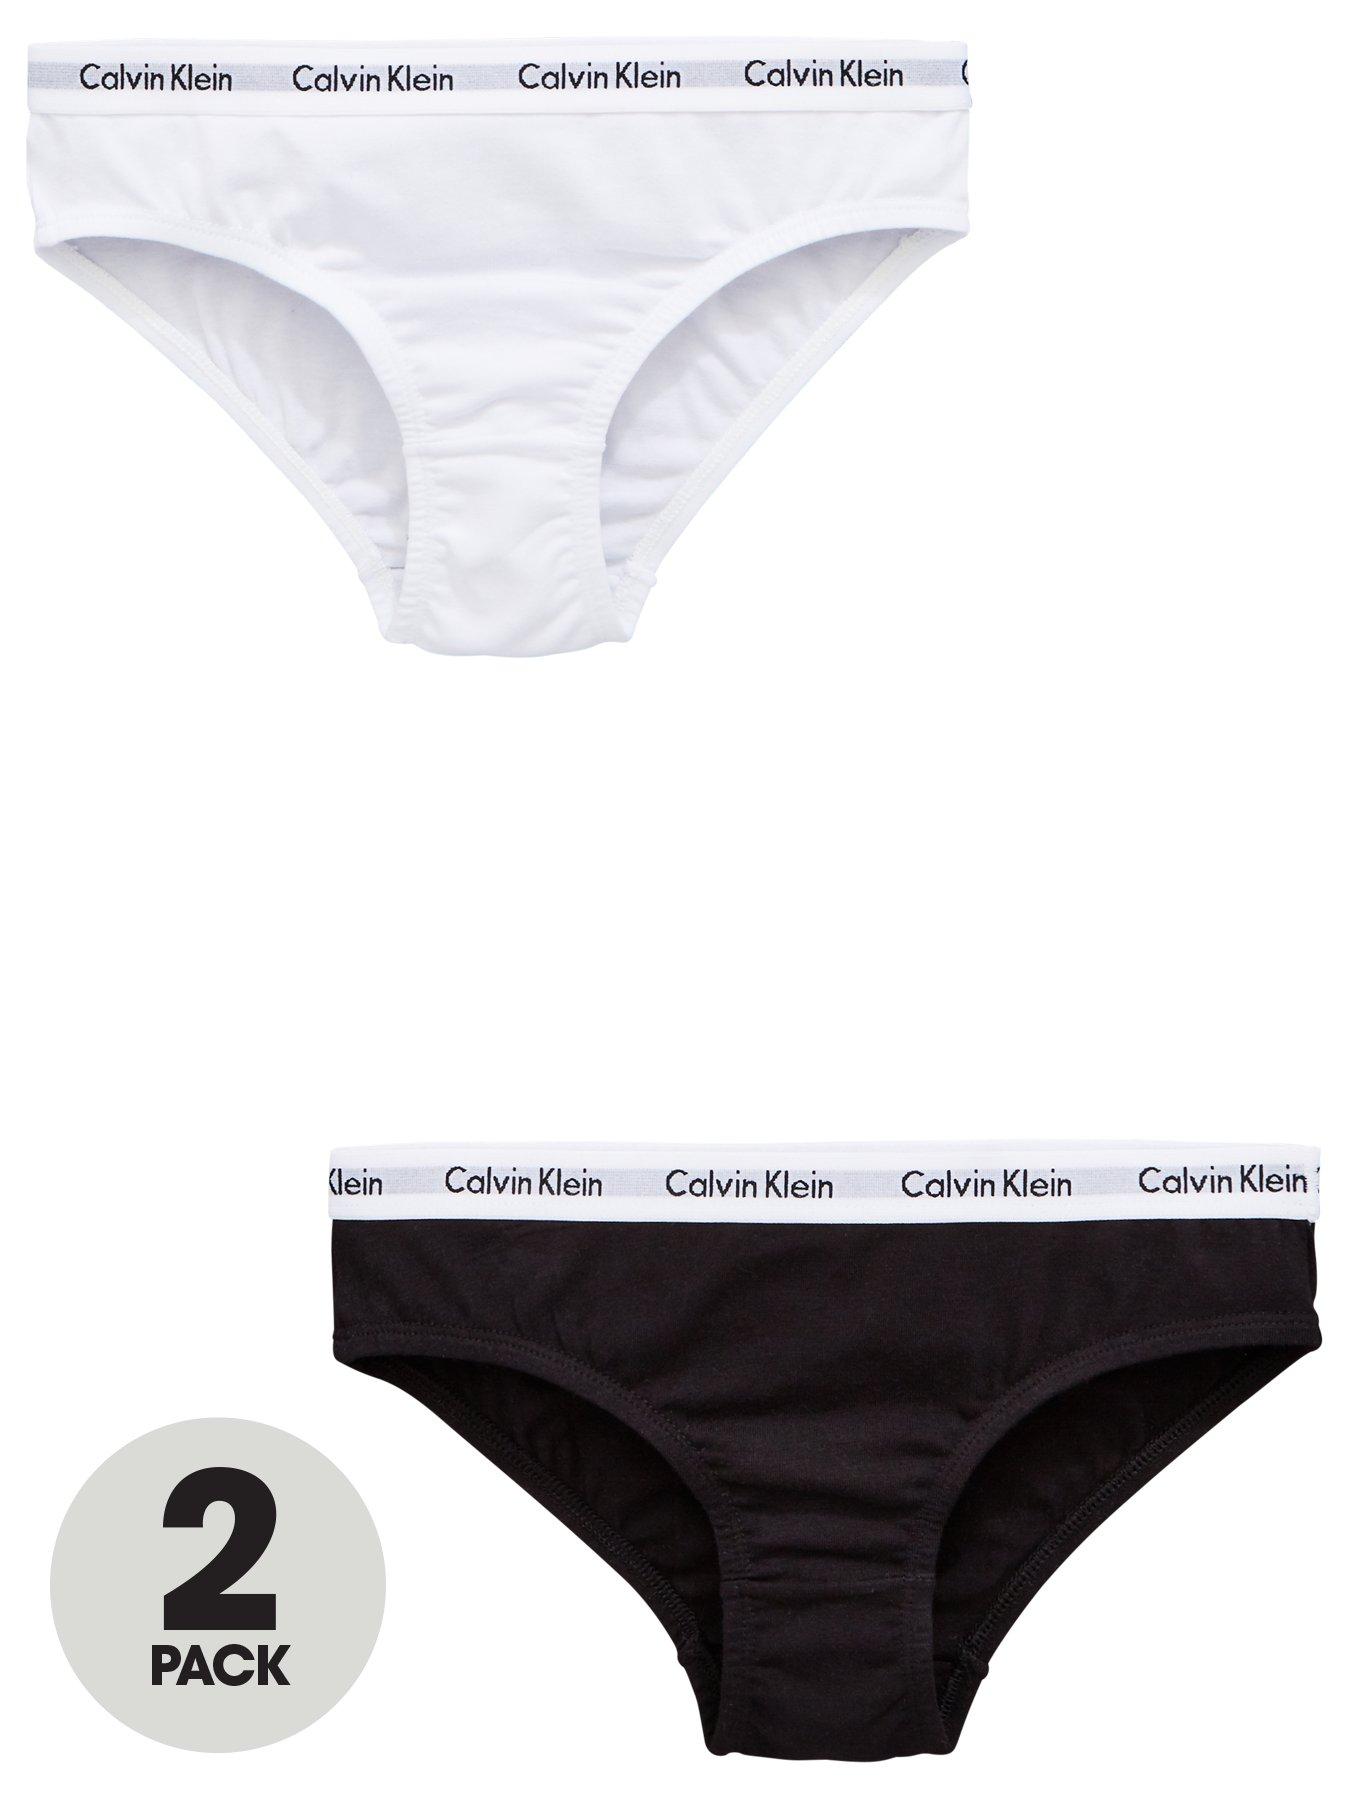 Calvin klein, Underwear & socks, Girls clothes